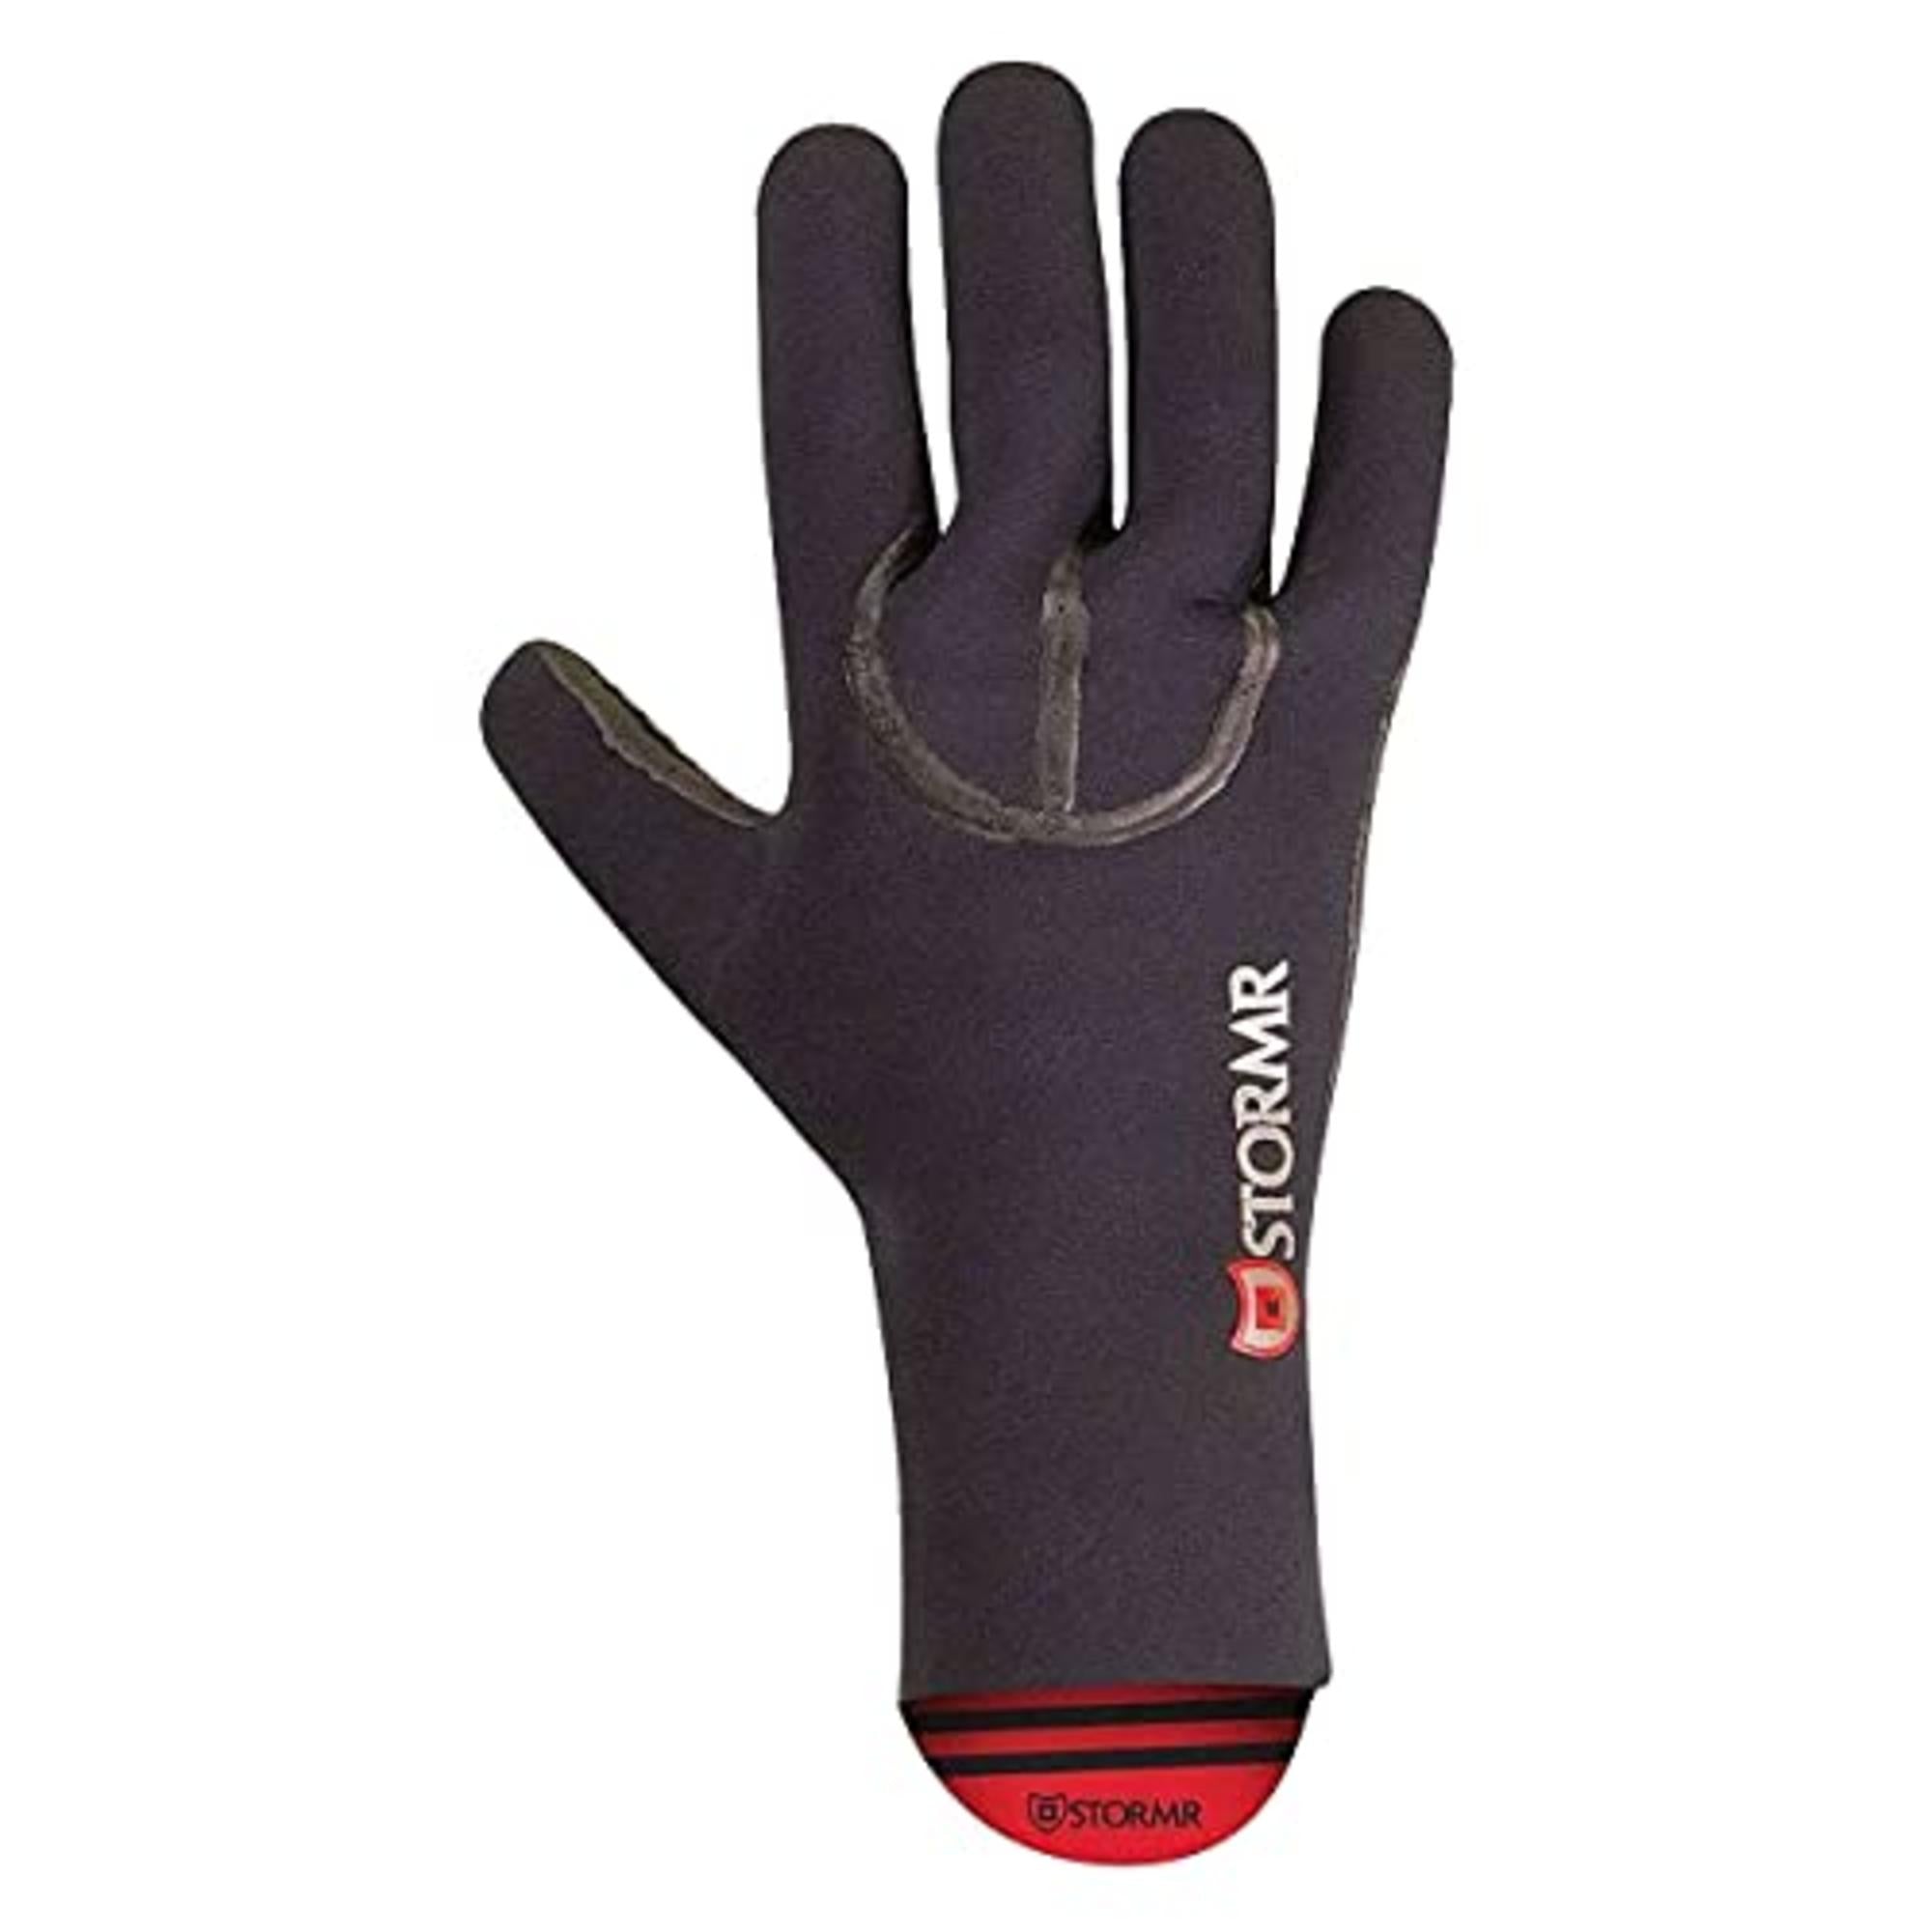 Stormr Typhoon Neoprene Gloves, Black